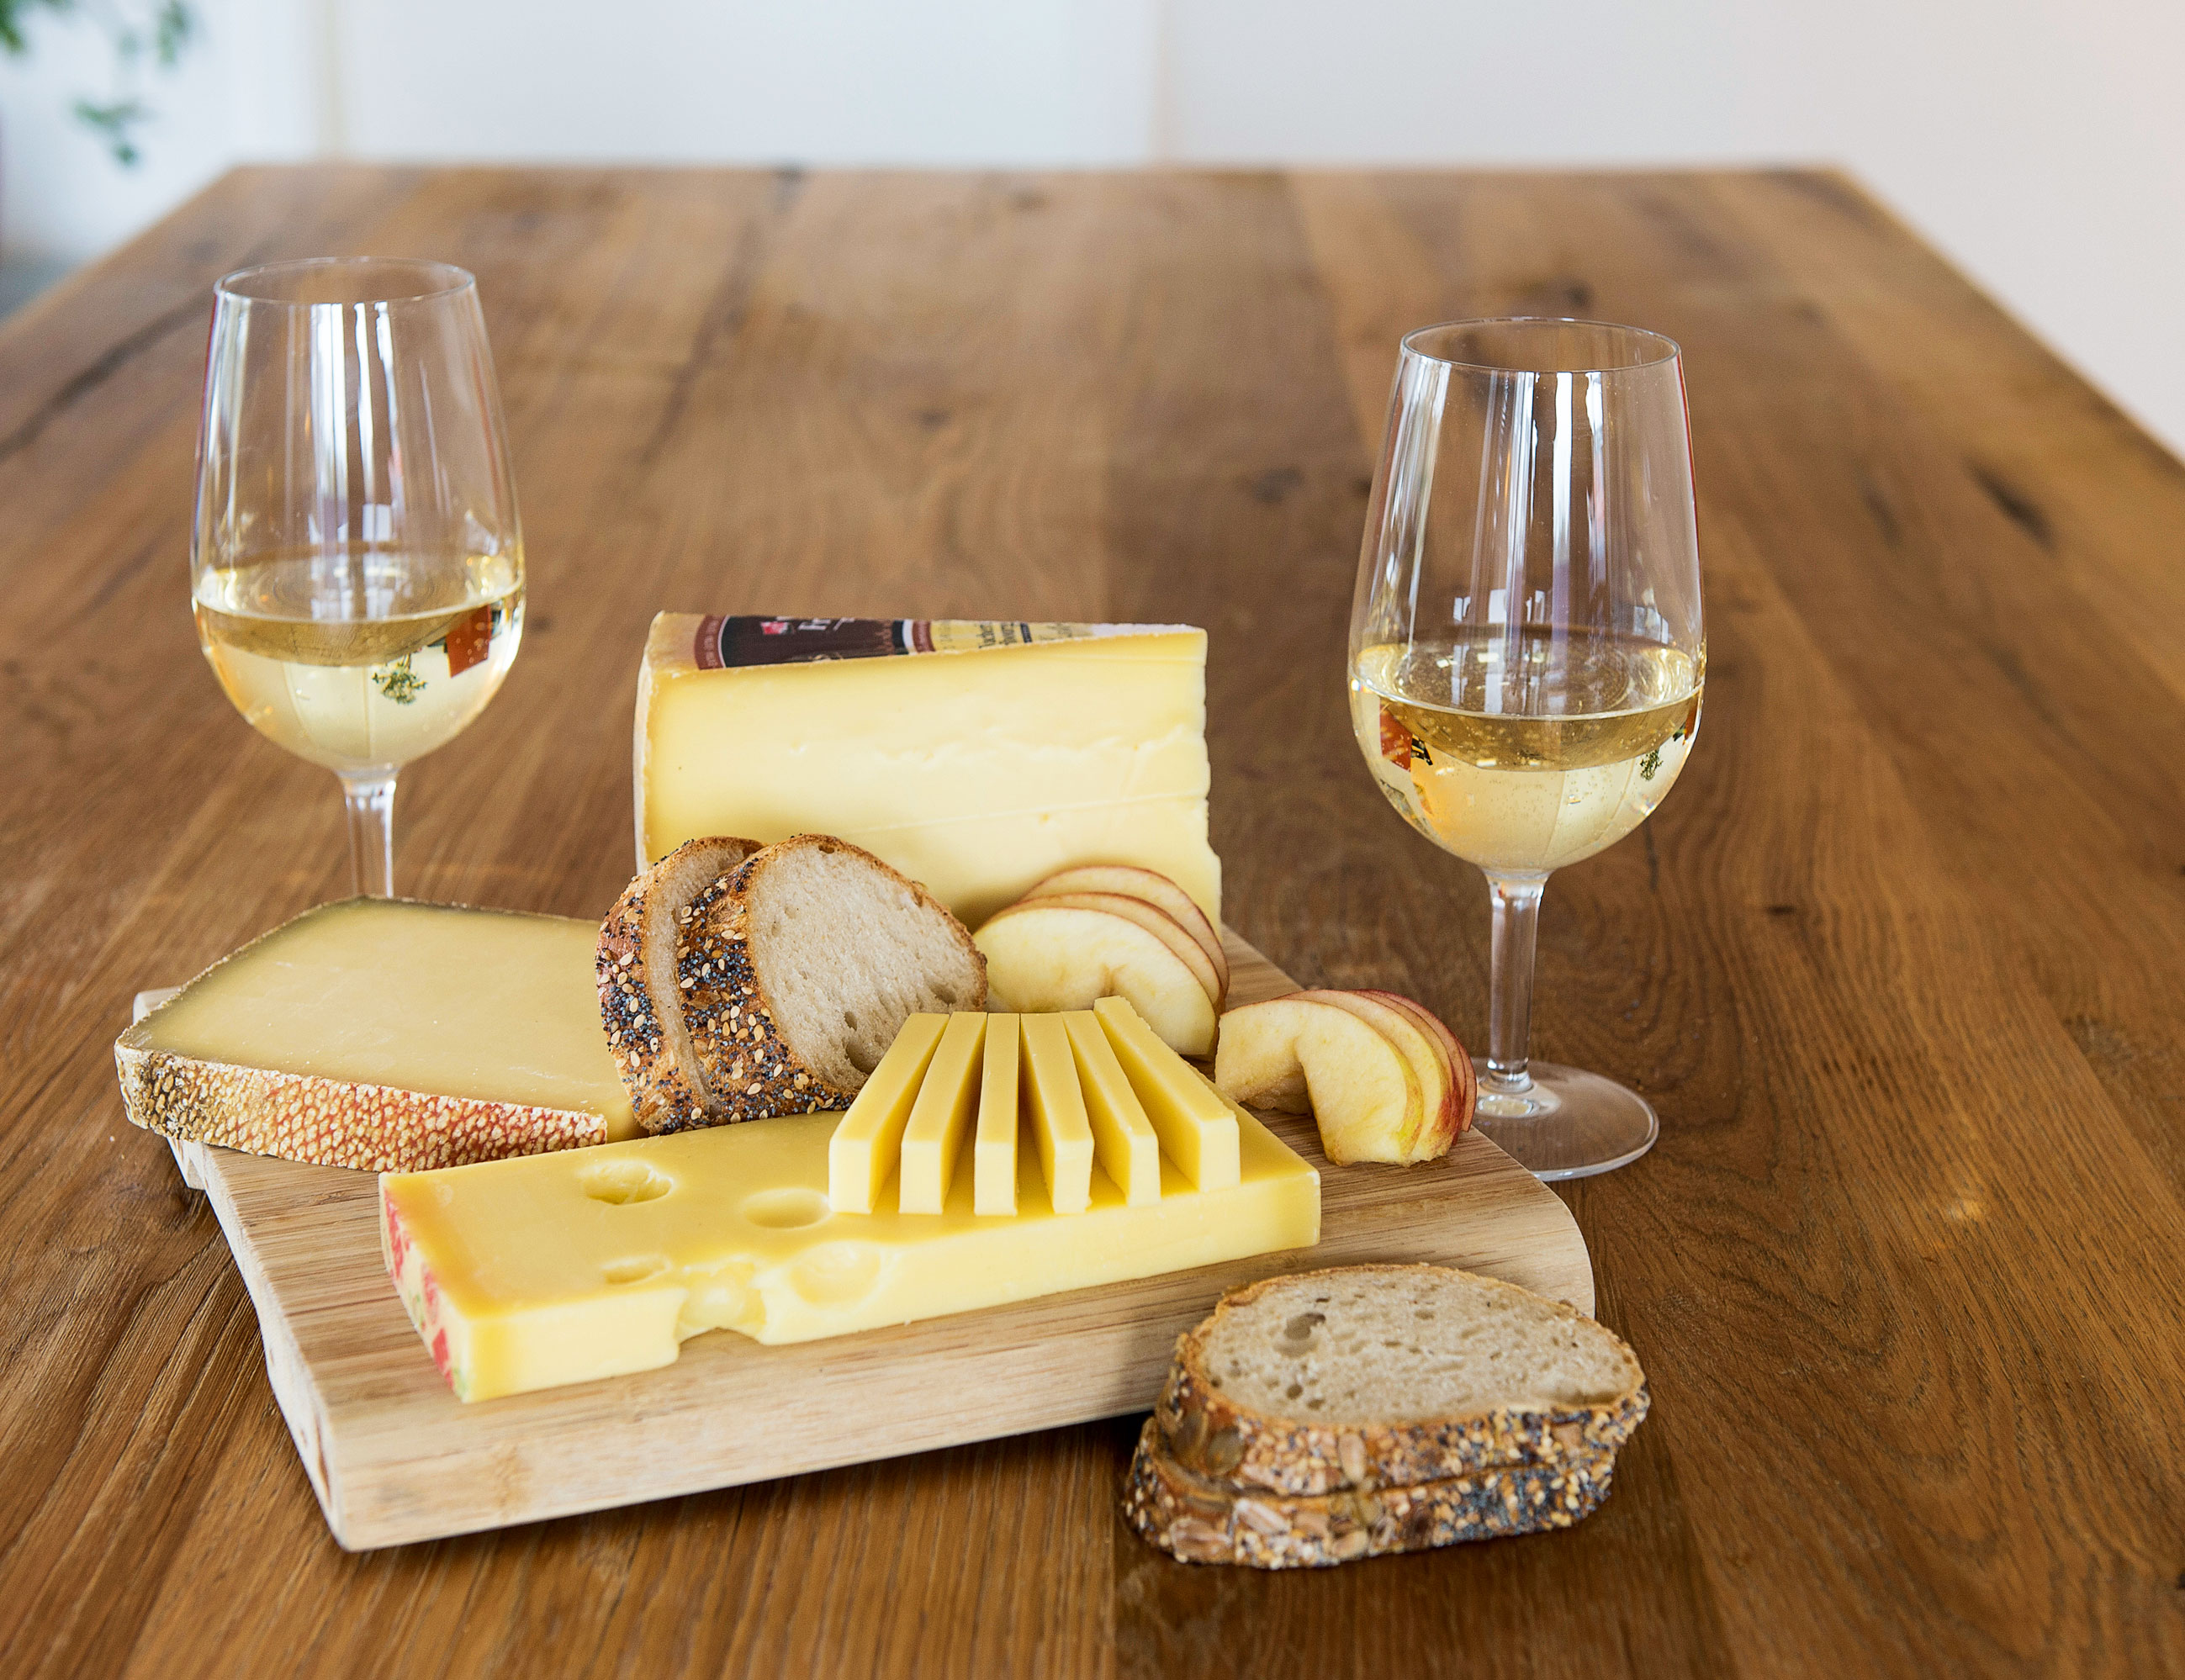 Vins et fromages suisses: un heureux mariage